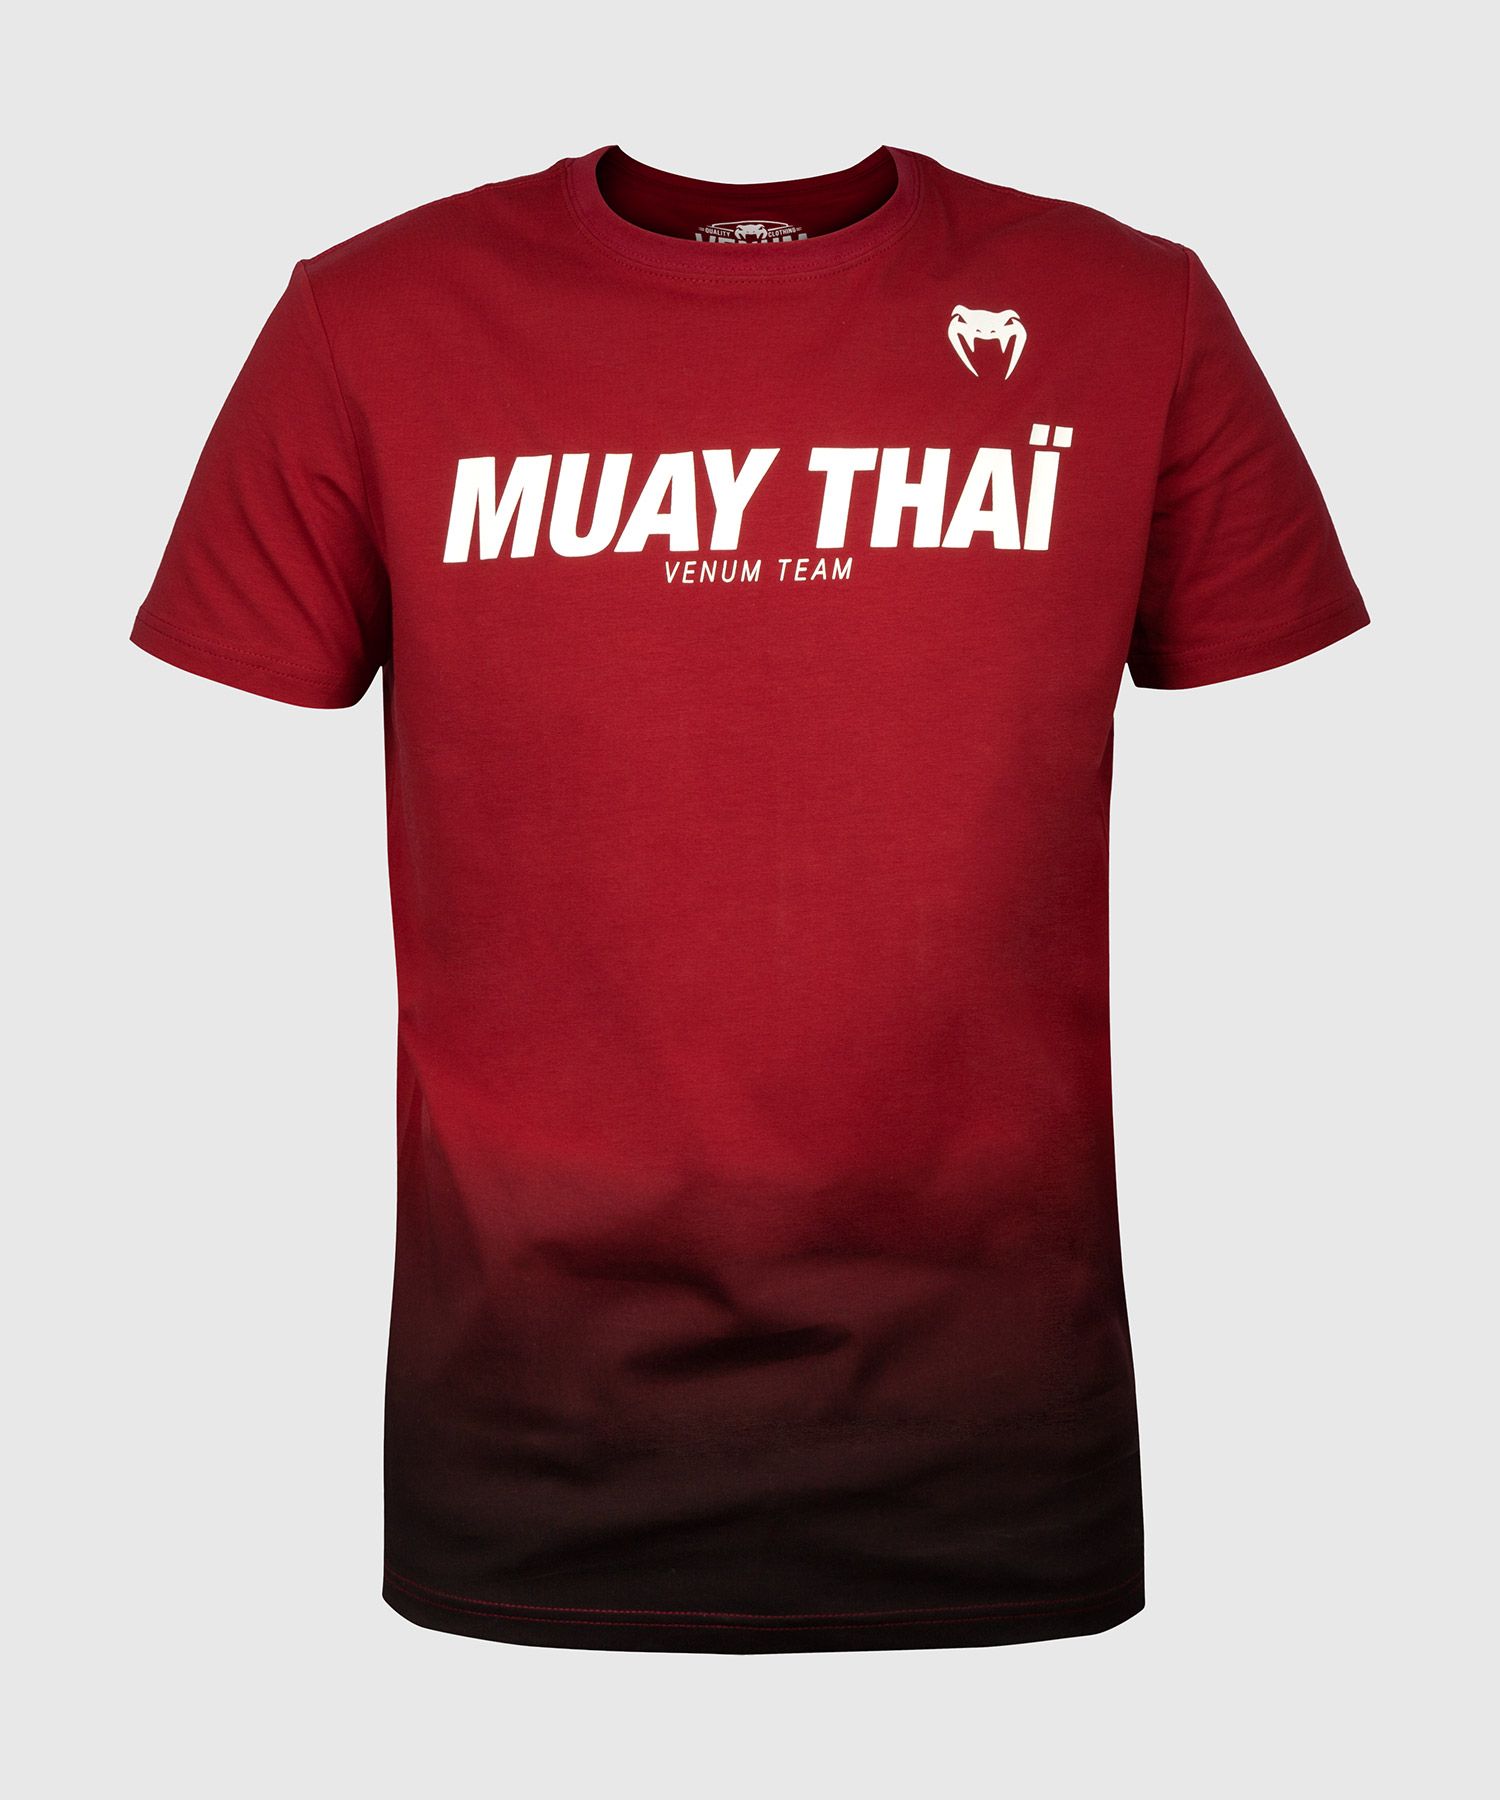 Venum Muay Thai VT T-shirt - Burgundy/Black